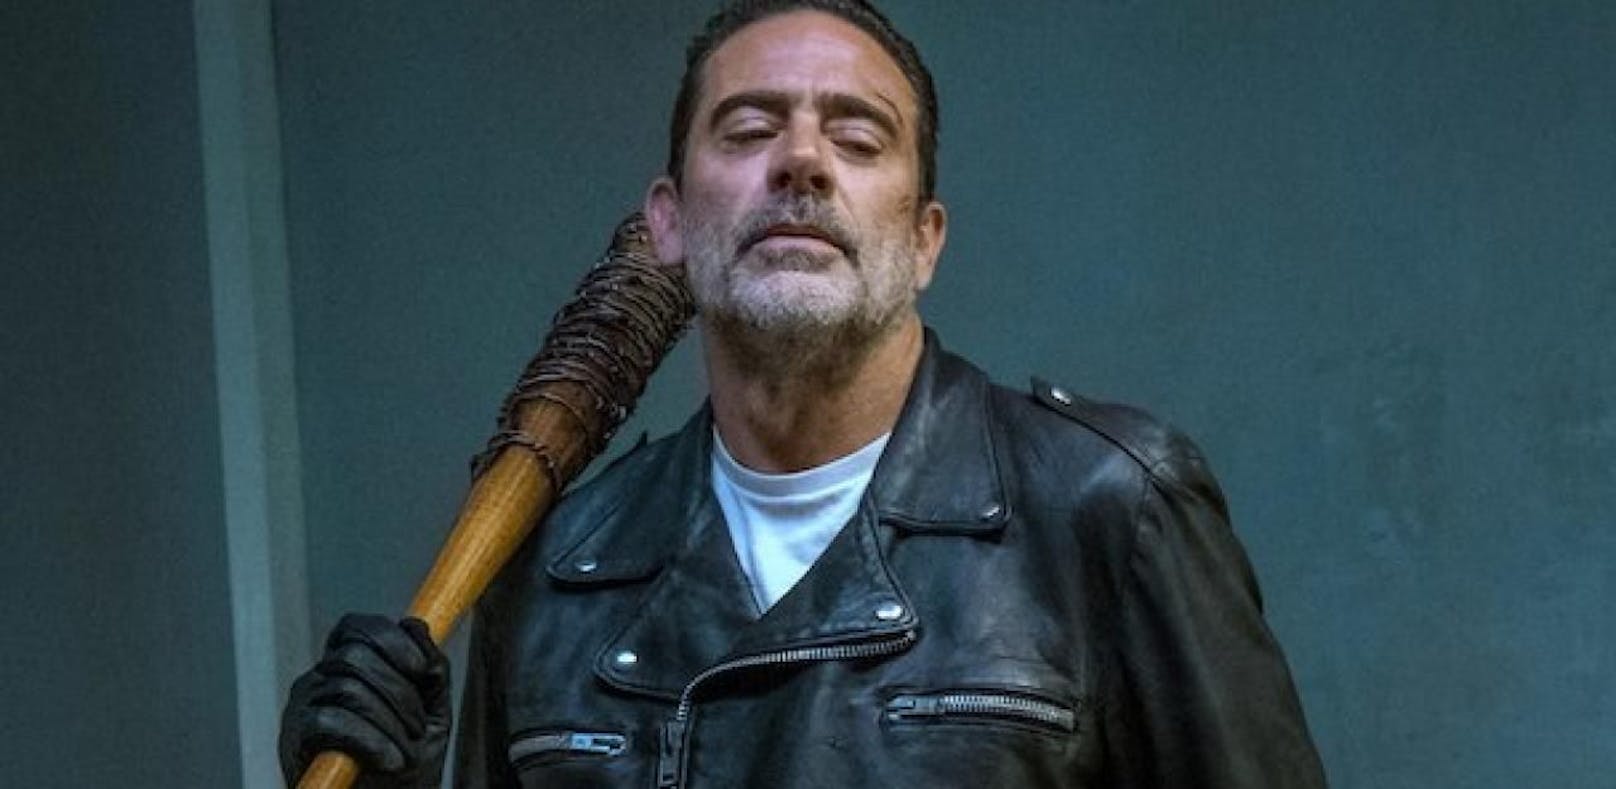 Szenen wie aus &quot;The Walking Dead&quot; Ein Verdächtiger drohte mehreren Personen mit einem mit Stacheldraht umwickelten Baseballschläger. Einen solchen benutzt die Serienfigur Negan und nennt die Waffe Lucille.